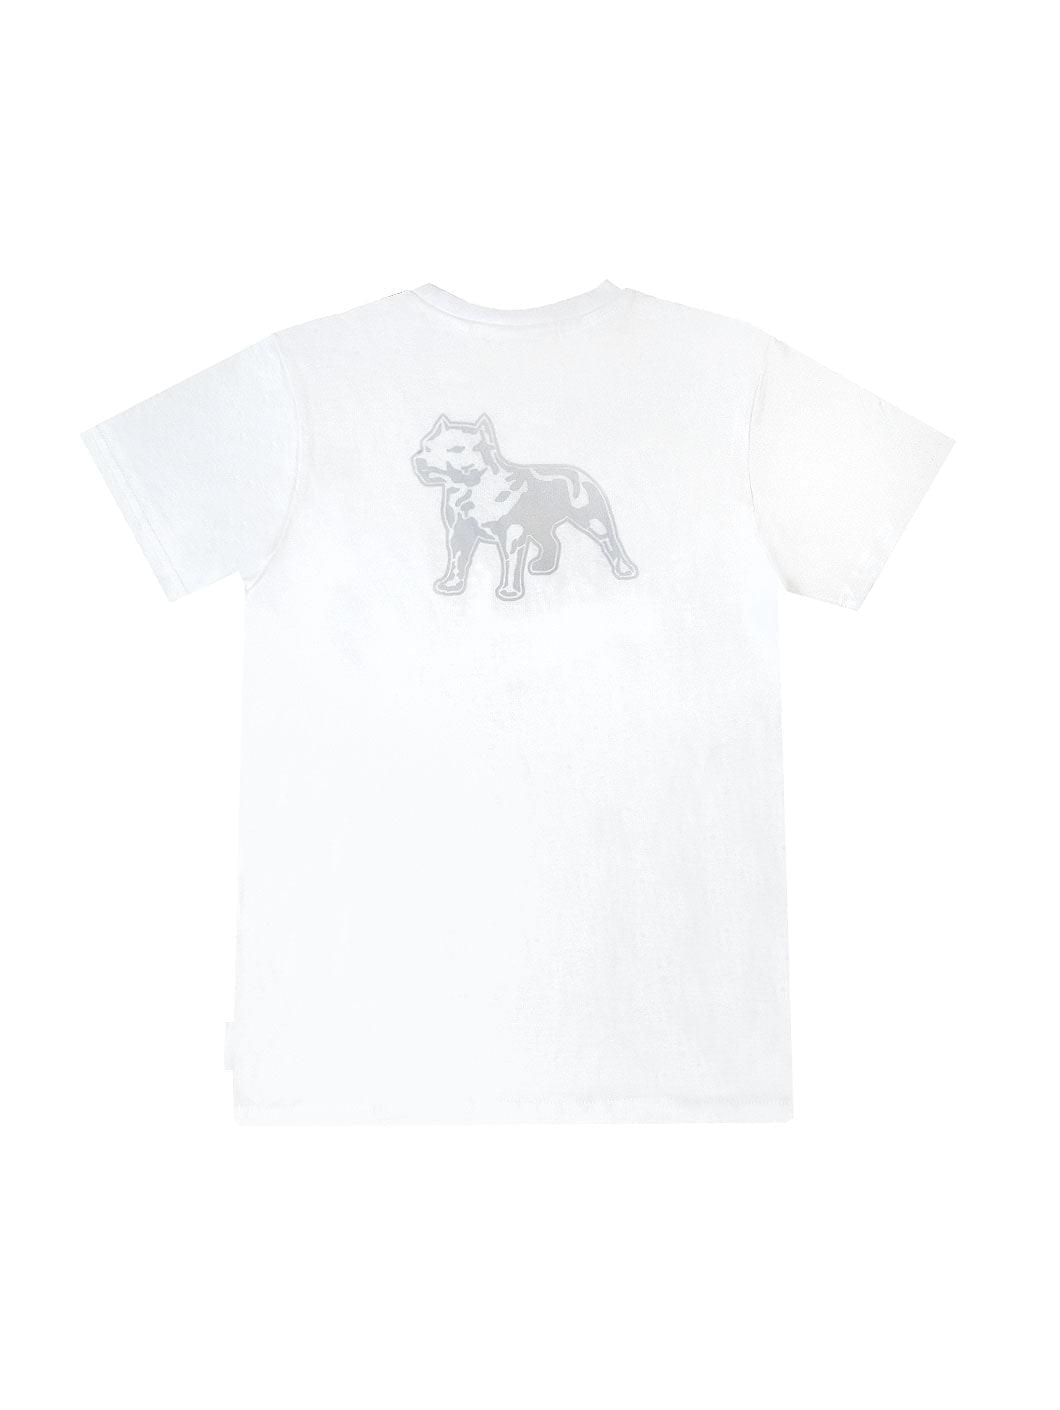 Amstaff Kids Tayson T-Shirt weiß - 1